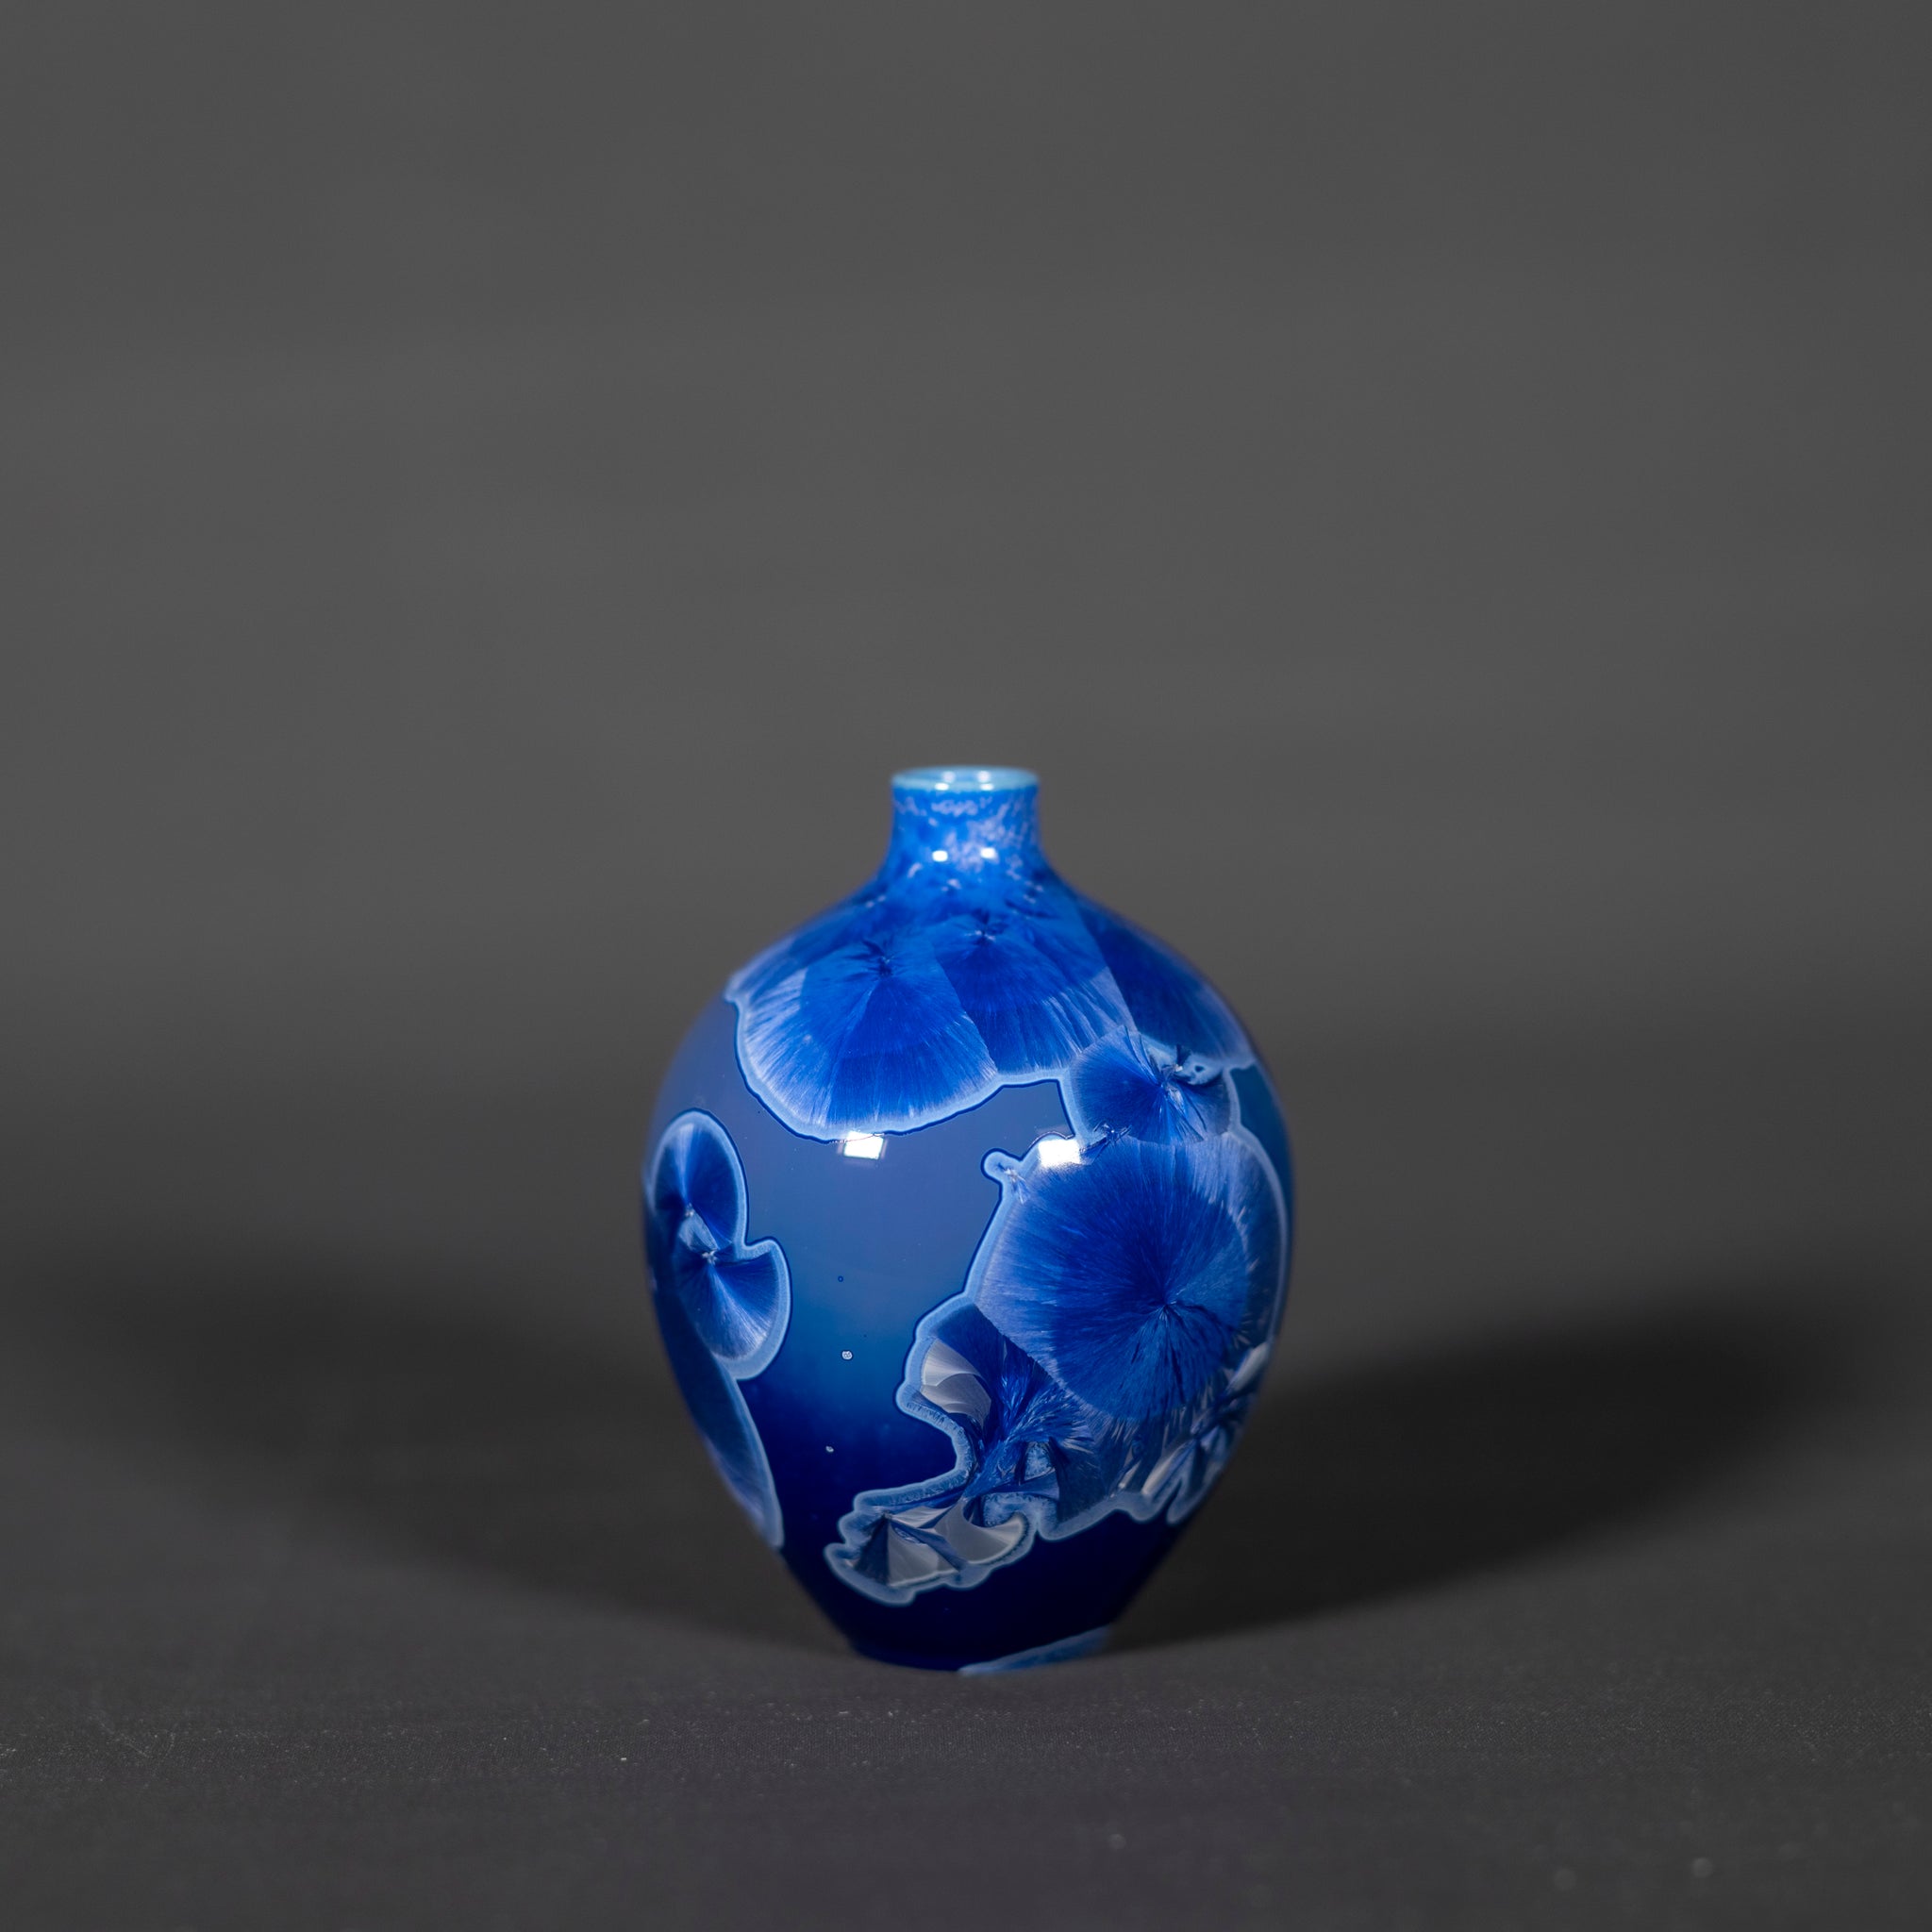 Miniature Blue Crystalline Vase